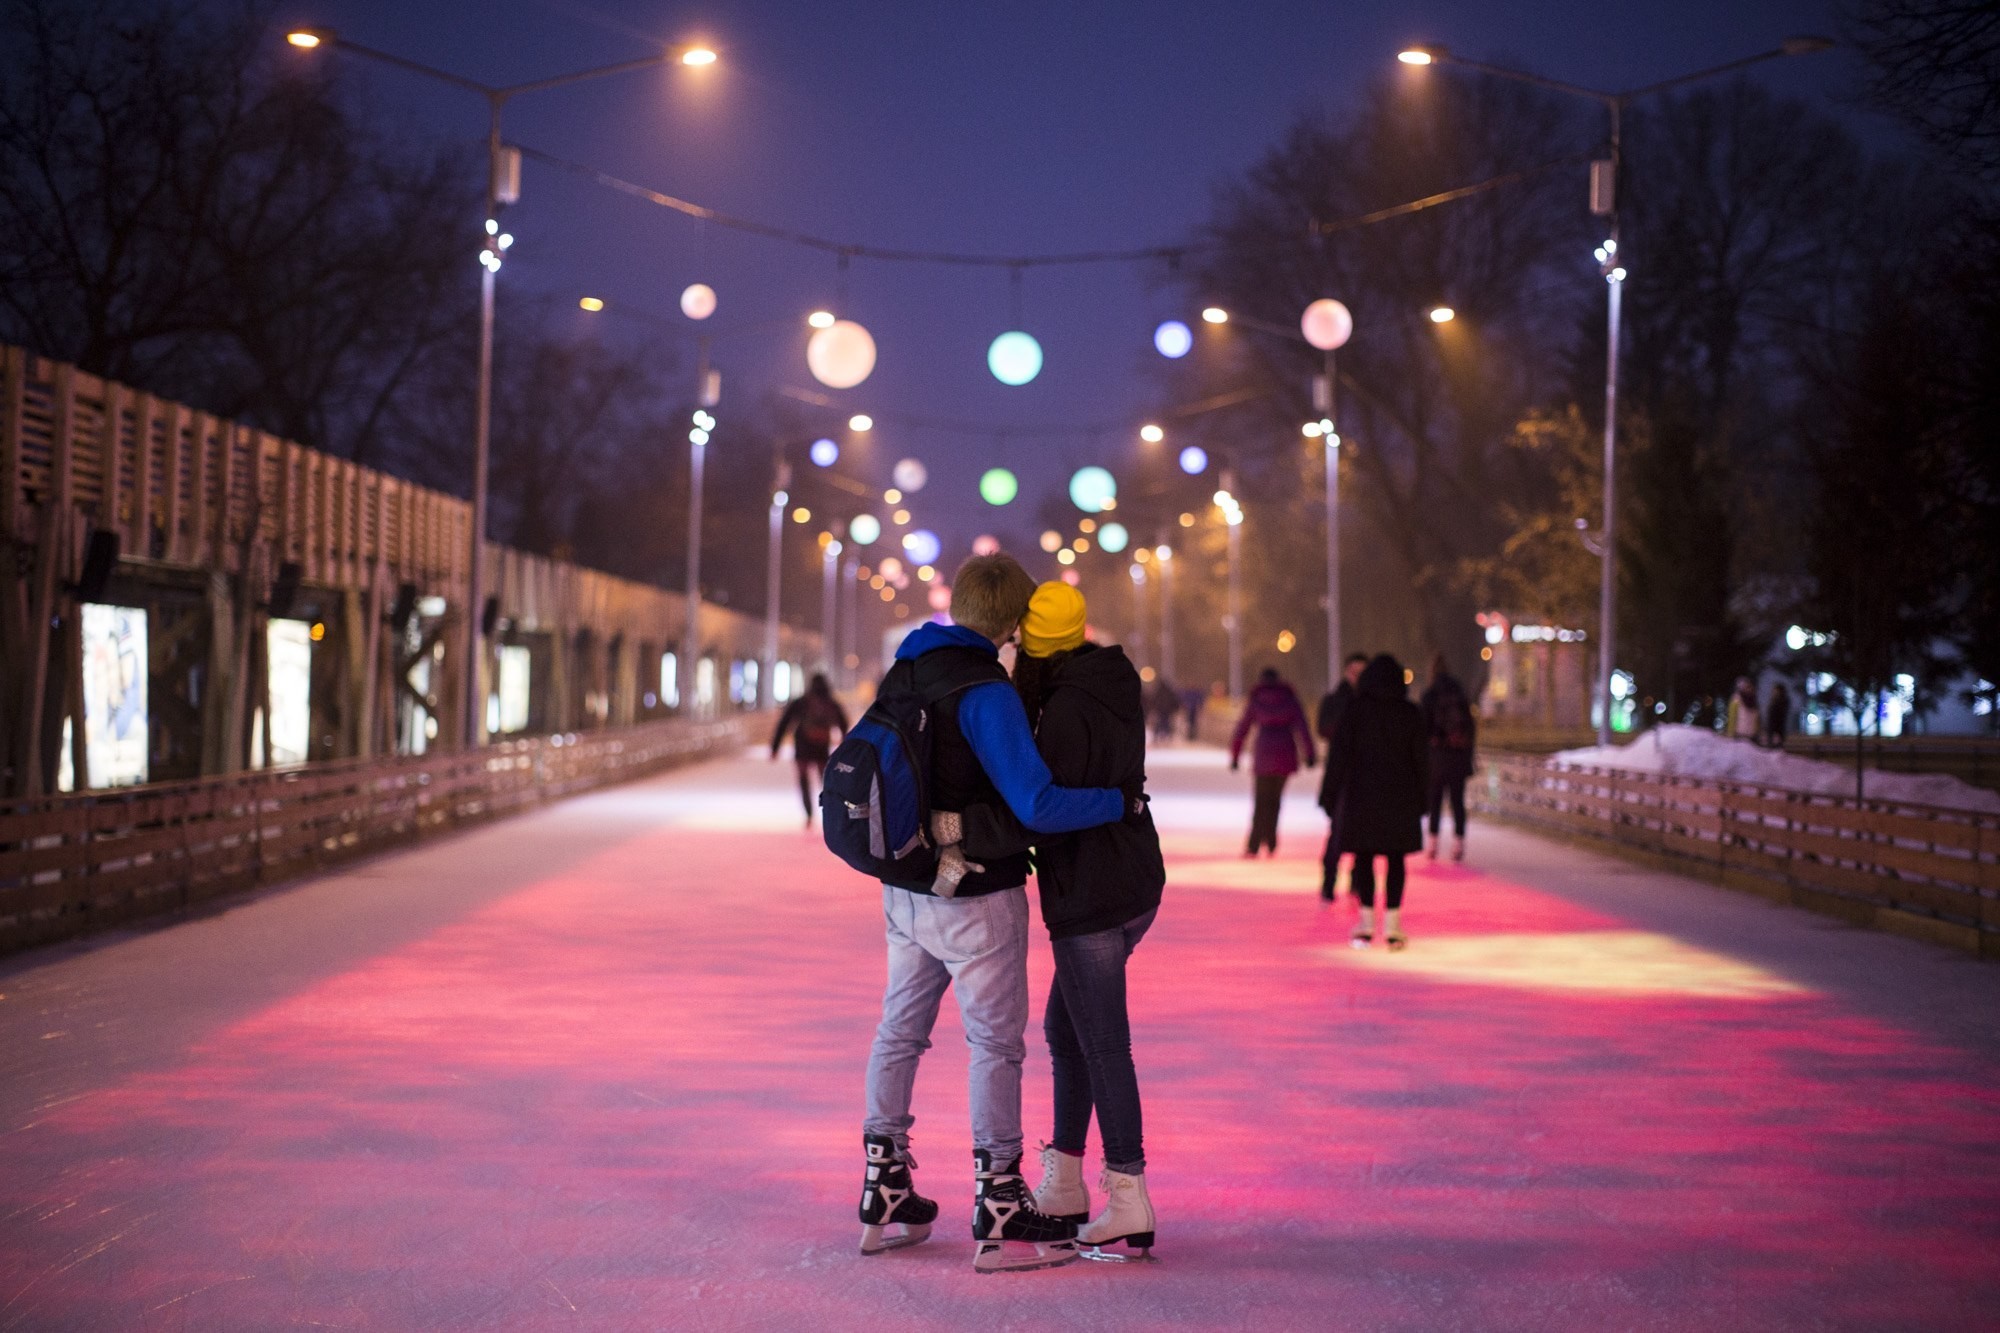 Фото пары ночью на улице